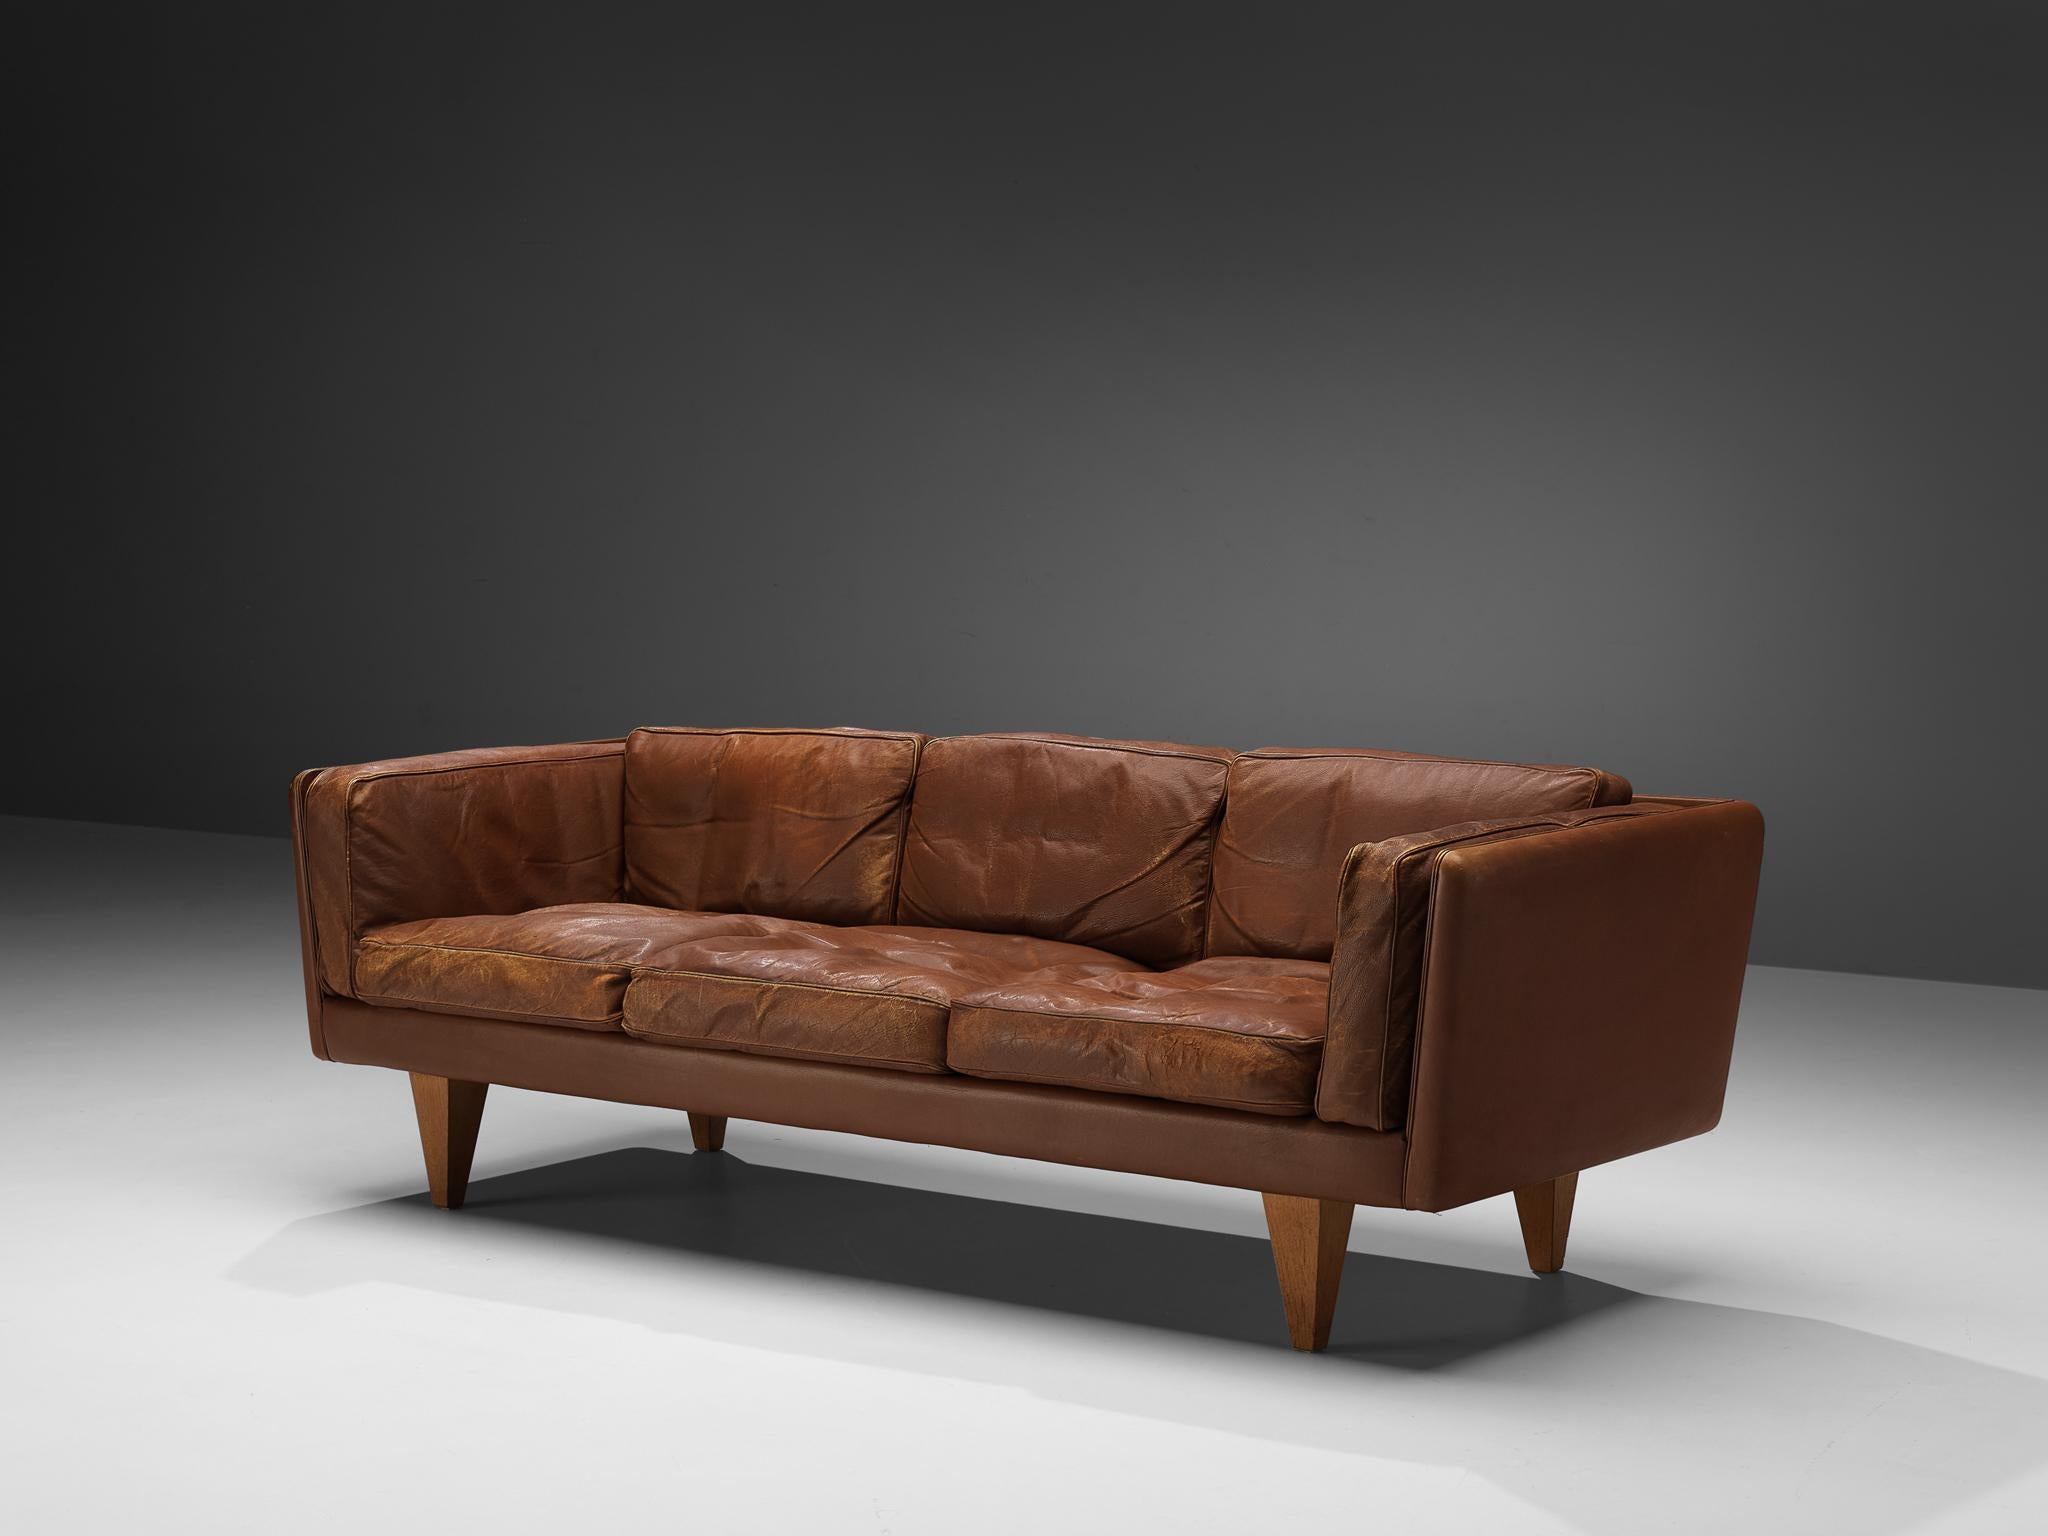 Illum Wikkelsø, Sofa, Modell 'V11', Leder, Eiche, Dänemark, 1960er Jahre

Dieses moderne Sofa wurde von Illum Wikkelsø entworfen und zeichnet sich durch eine klare, offene Gestaltung und die Verwendung neutraler Materialien aus. Sitz und Gestell